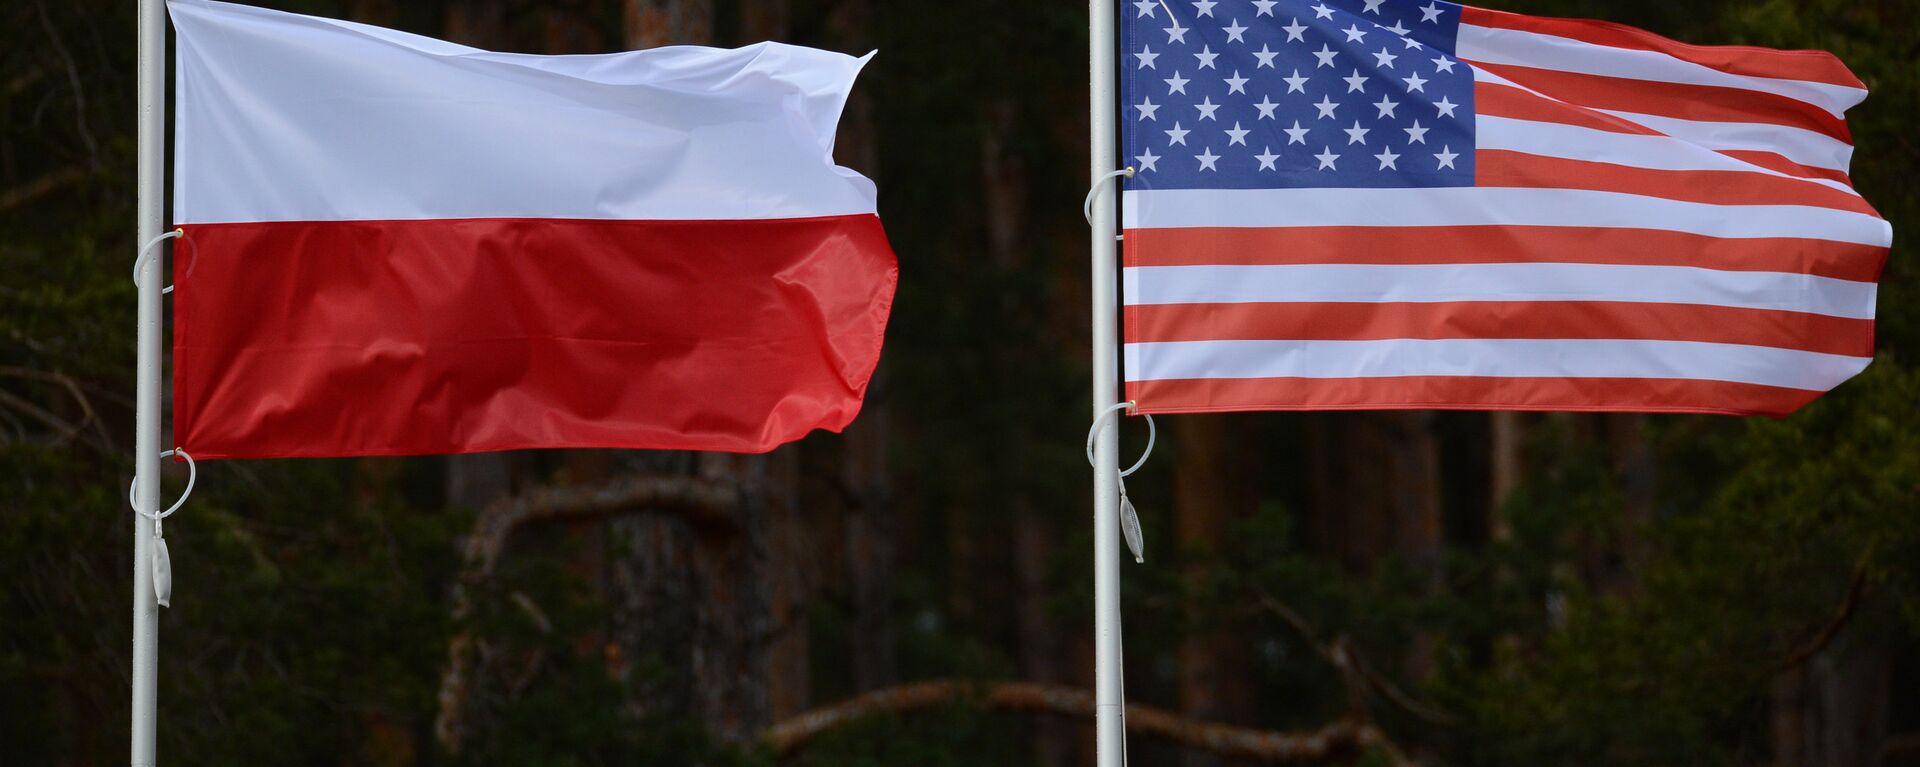 Флаги США и Польши - Sputnik Грузия, 1920, 15.01.2021